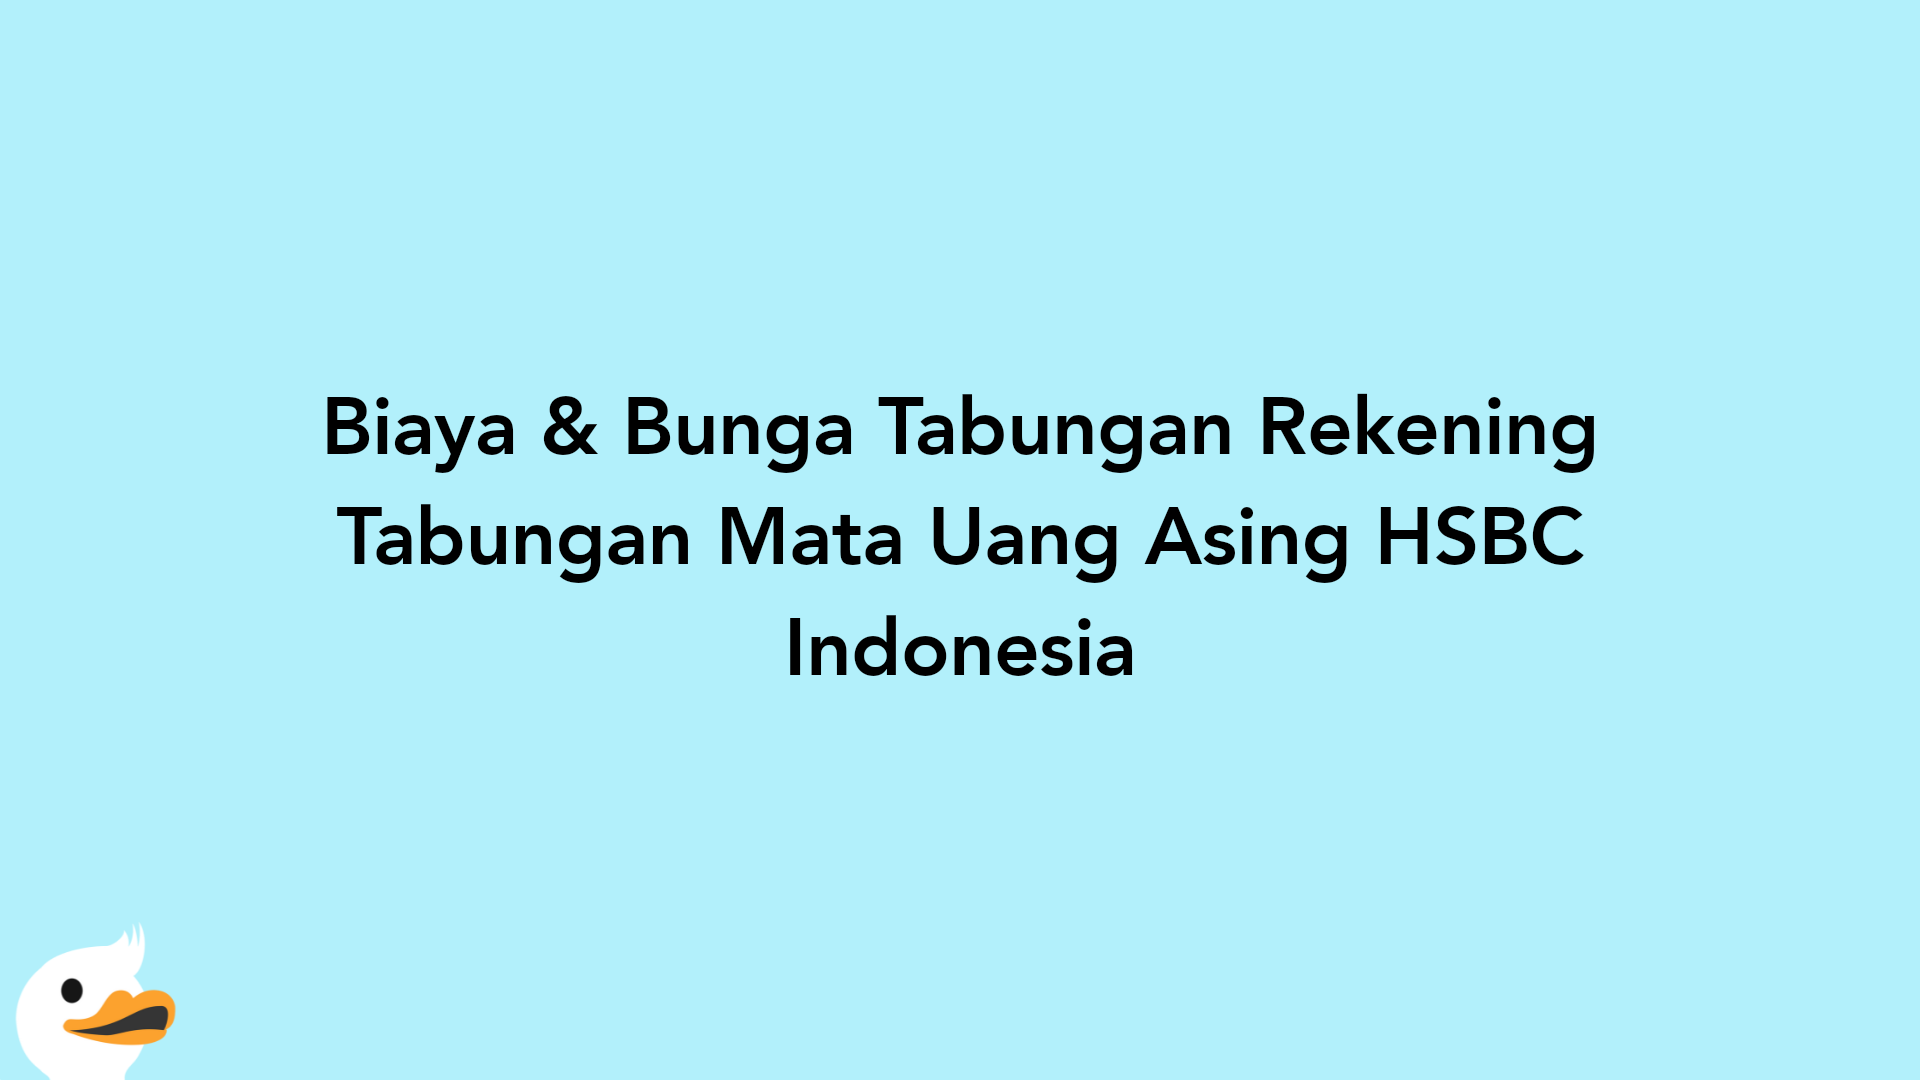 Biaya & Bunga Tabungan Rekening Tabungan Mata Uang Asing HSBC Indonesia